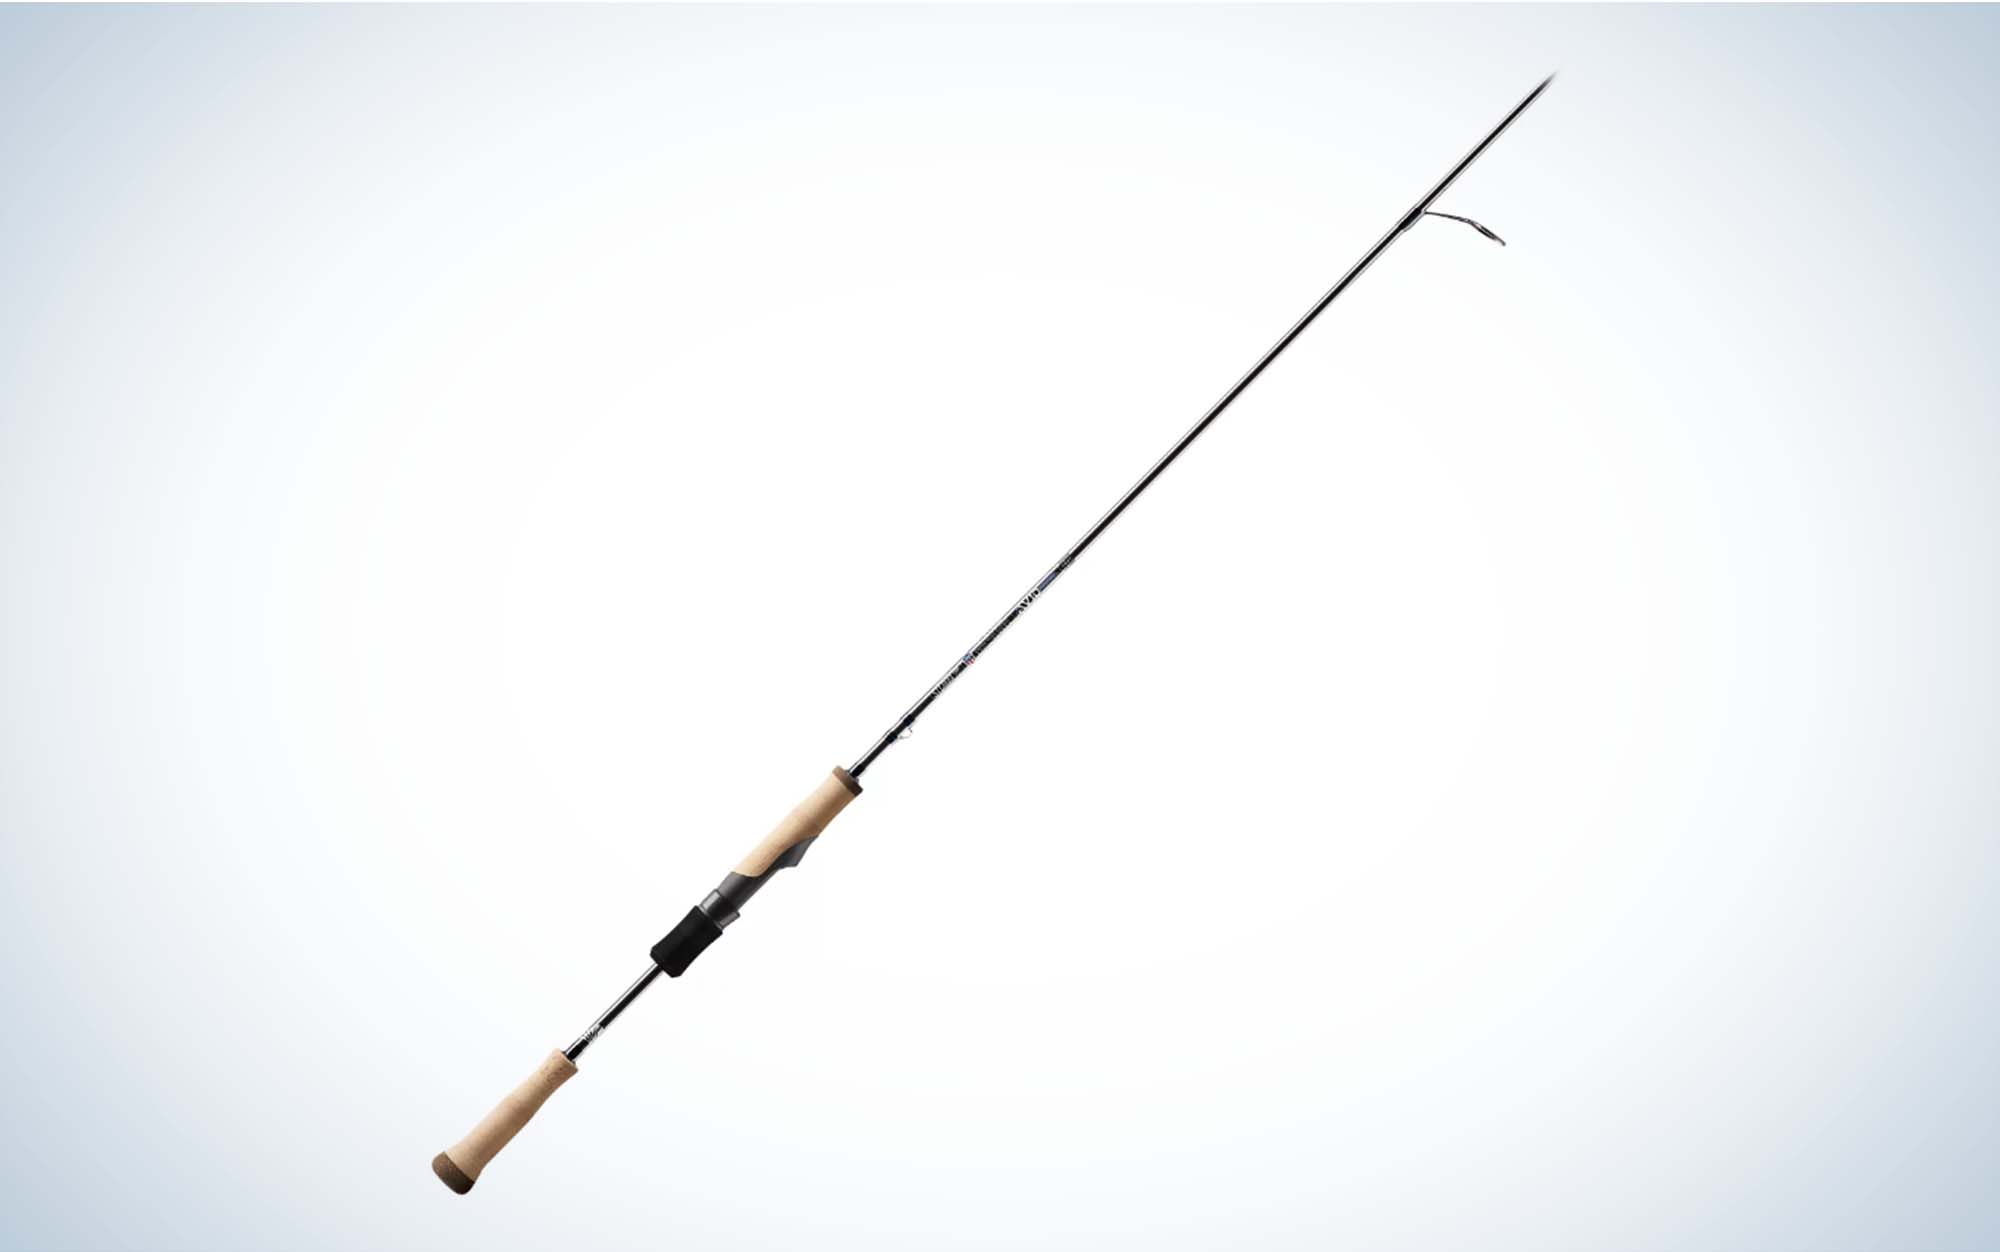 13 FISHING One 3 Rely Black Gen II 6' Ultra Light Rod 2-Piece